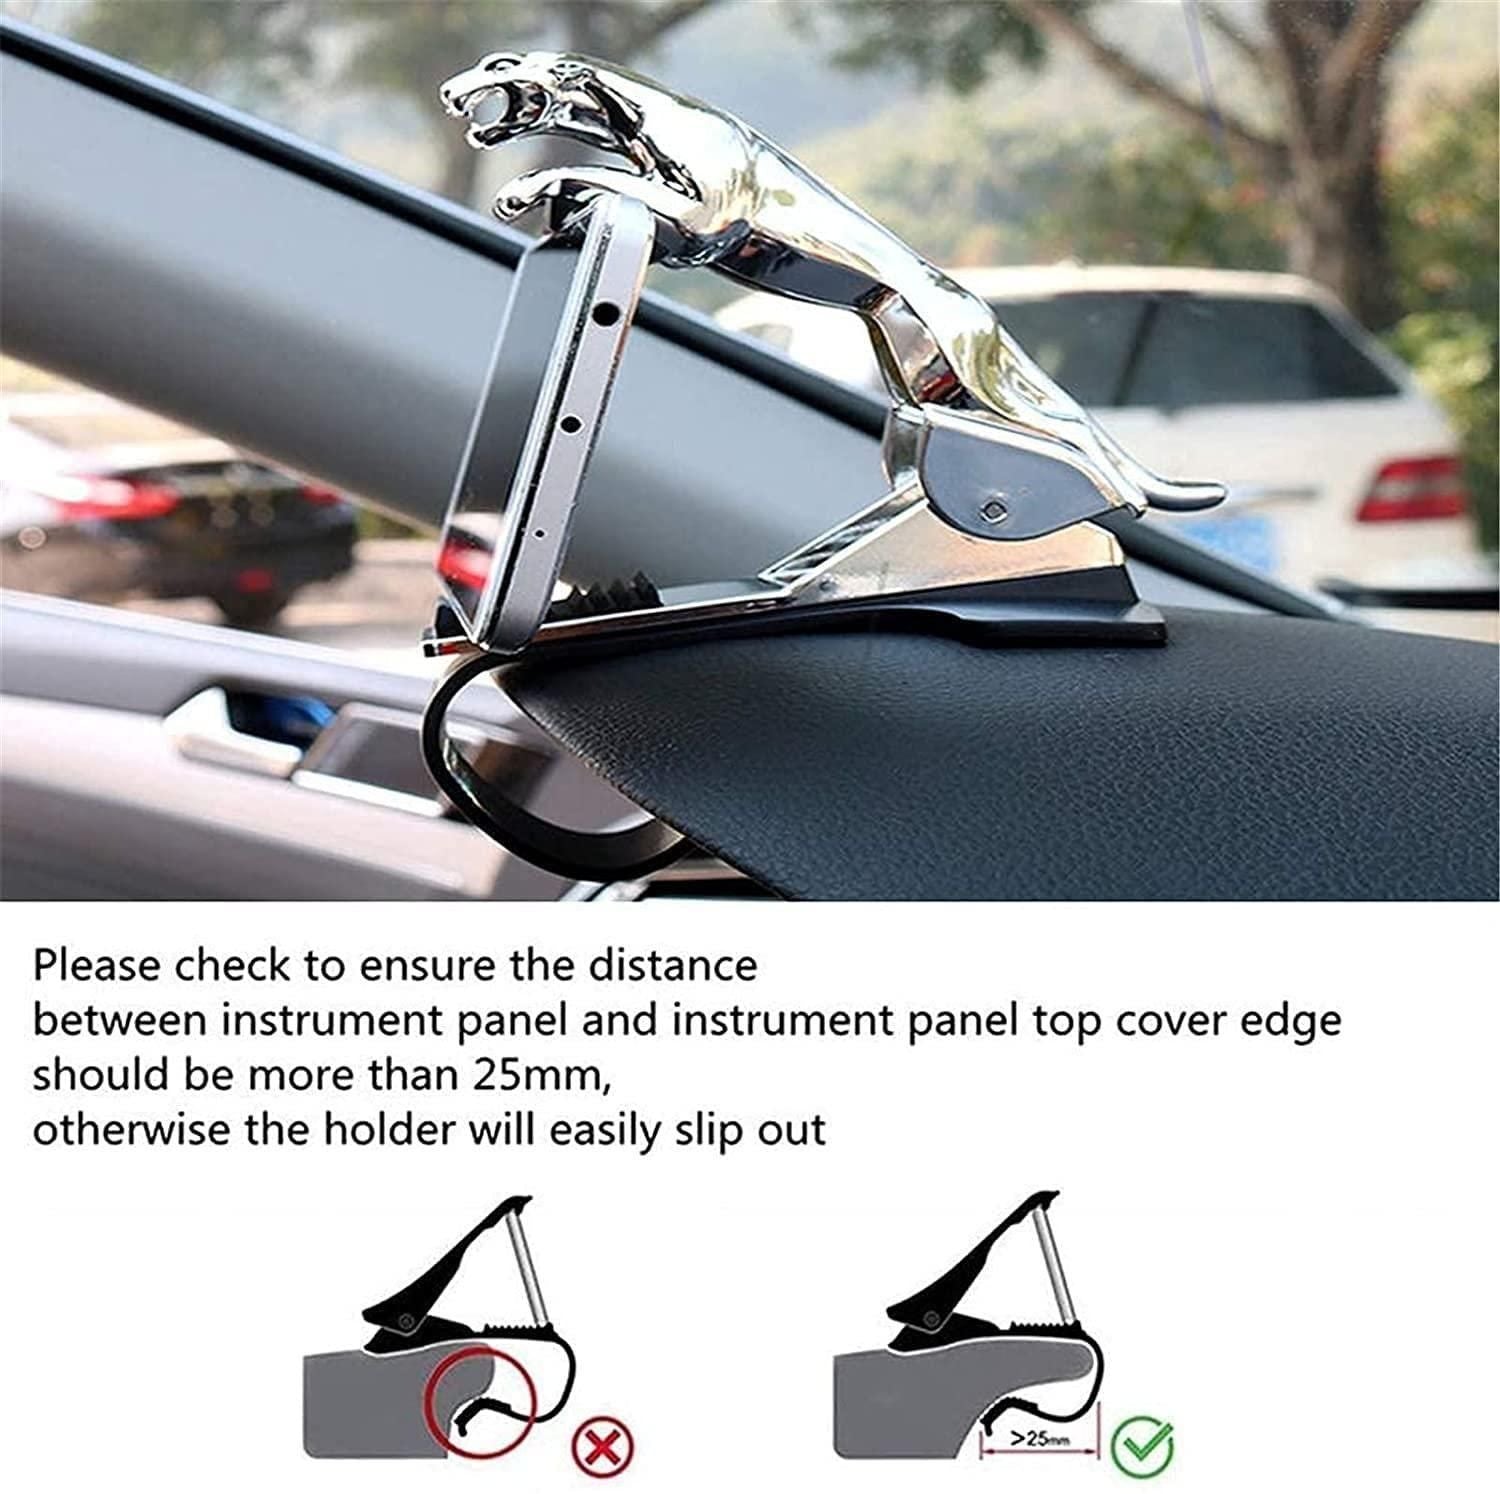 Jaguar Design Hud Car Mobile Phone Holder Mount Stand 360 Degree Rotation Adjustable Clip Holder for Dashboard - Pack of 1 Pcs